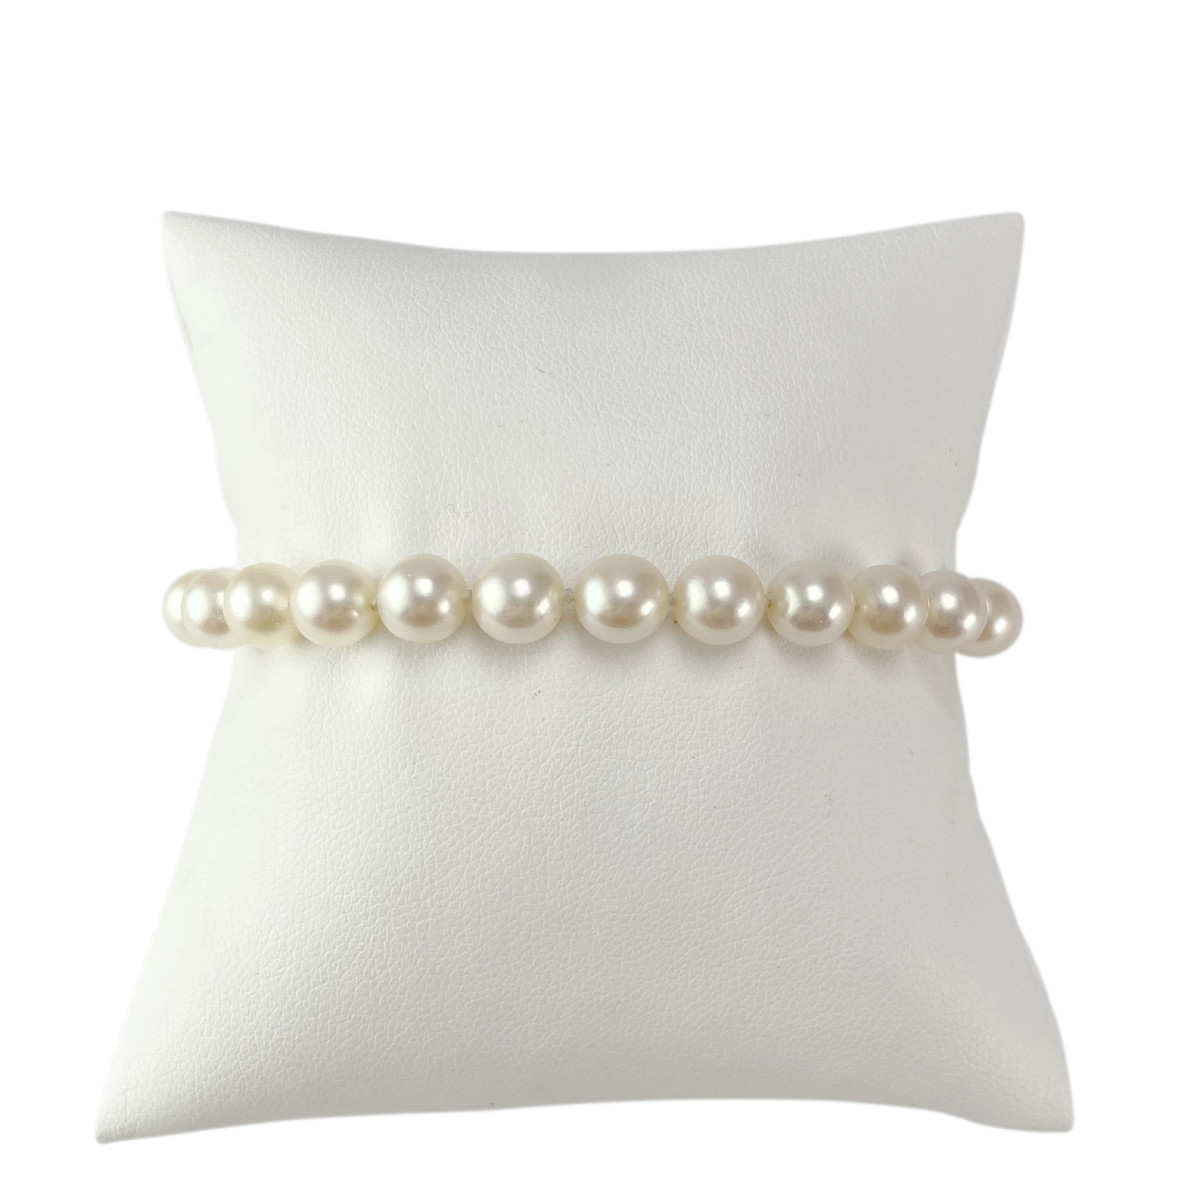 Bracelet d'occasion or 750 blanc perles de culture du japon 18 cm